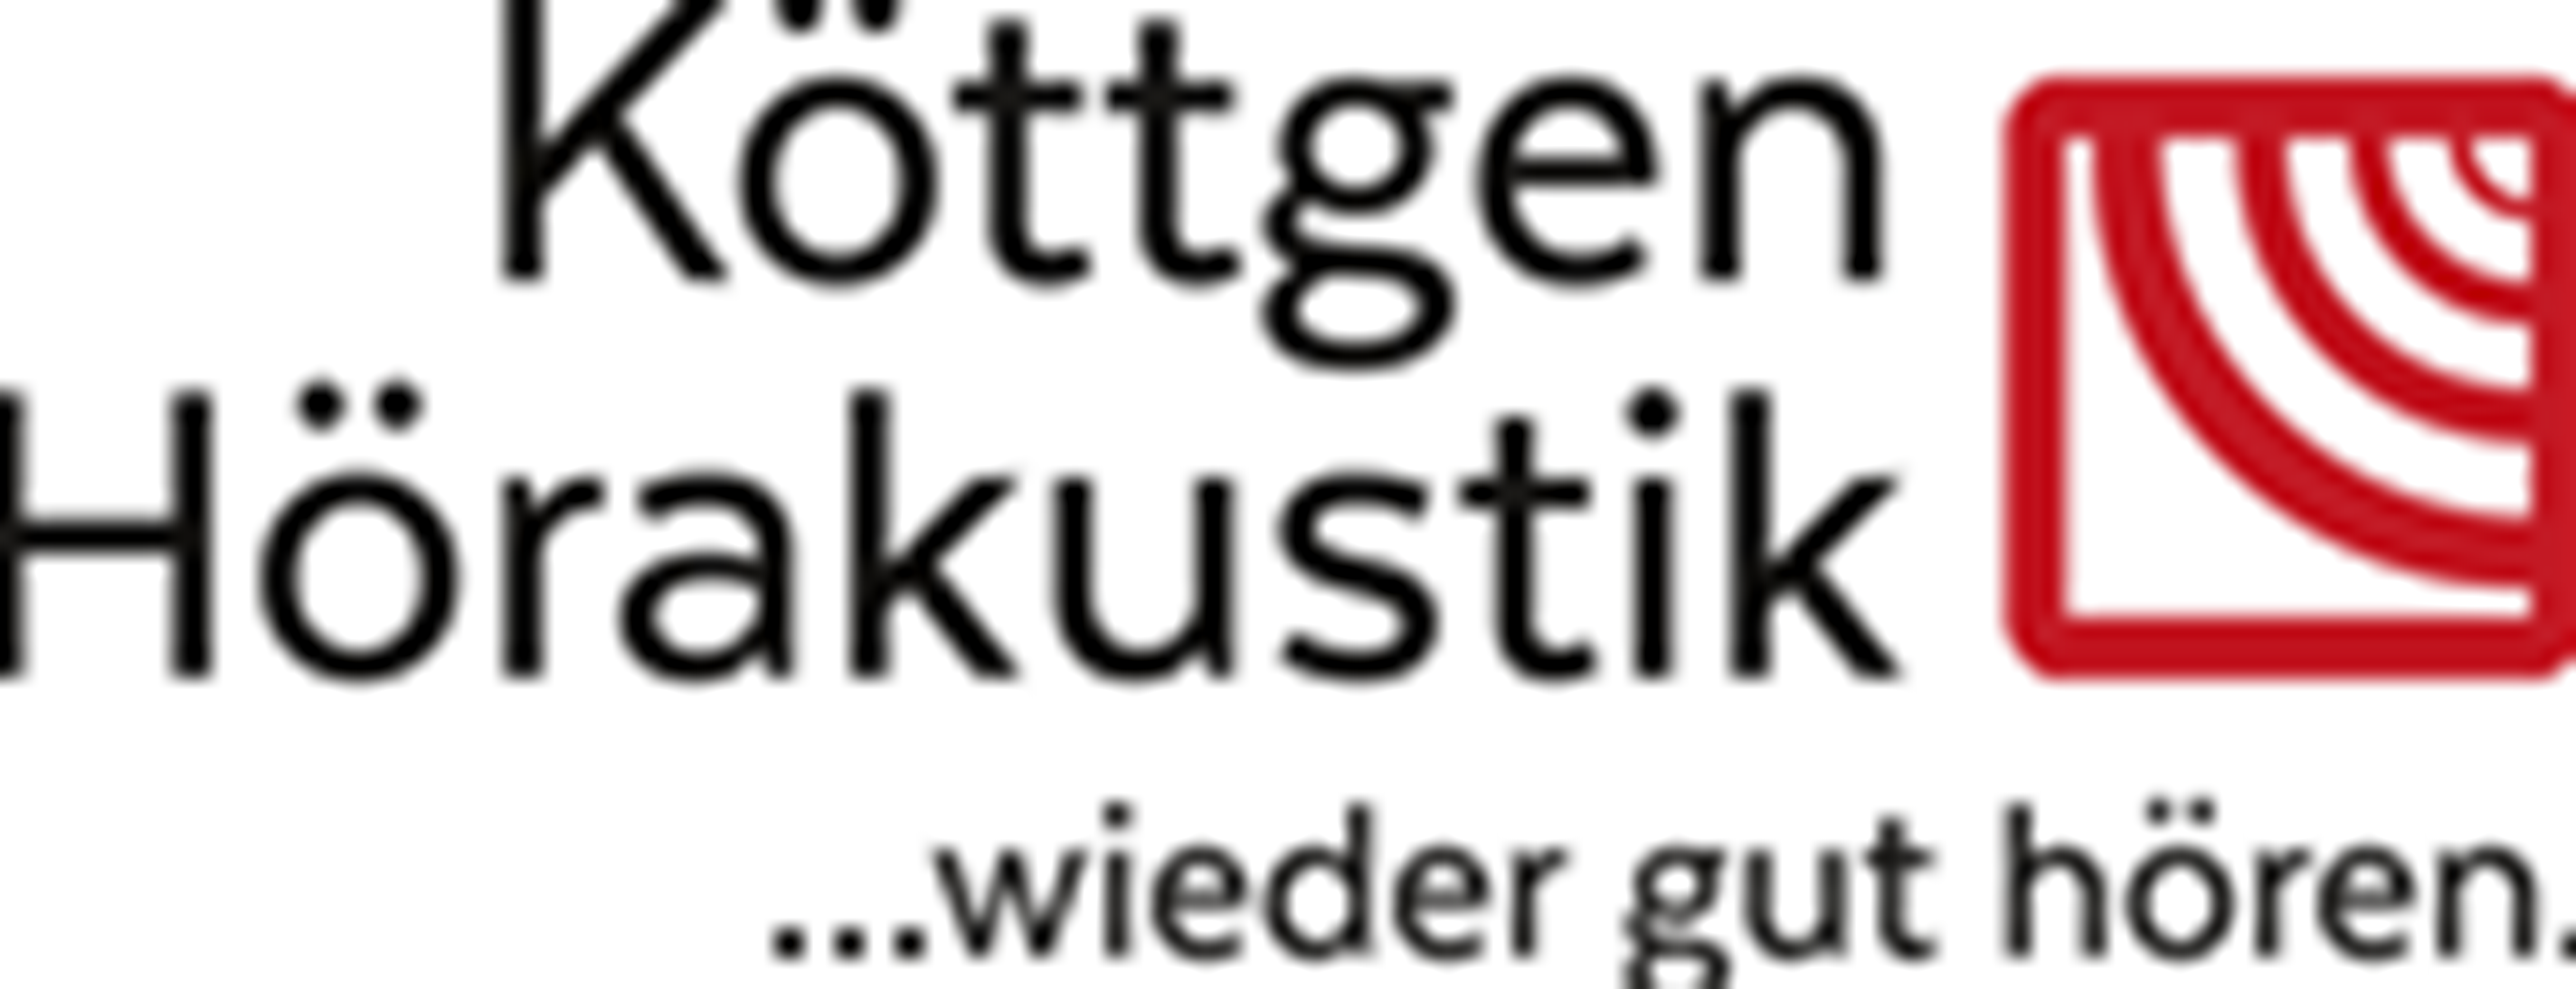 Koettgen Hoerakustik GmbH und Co. KG